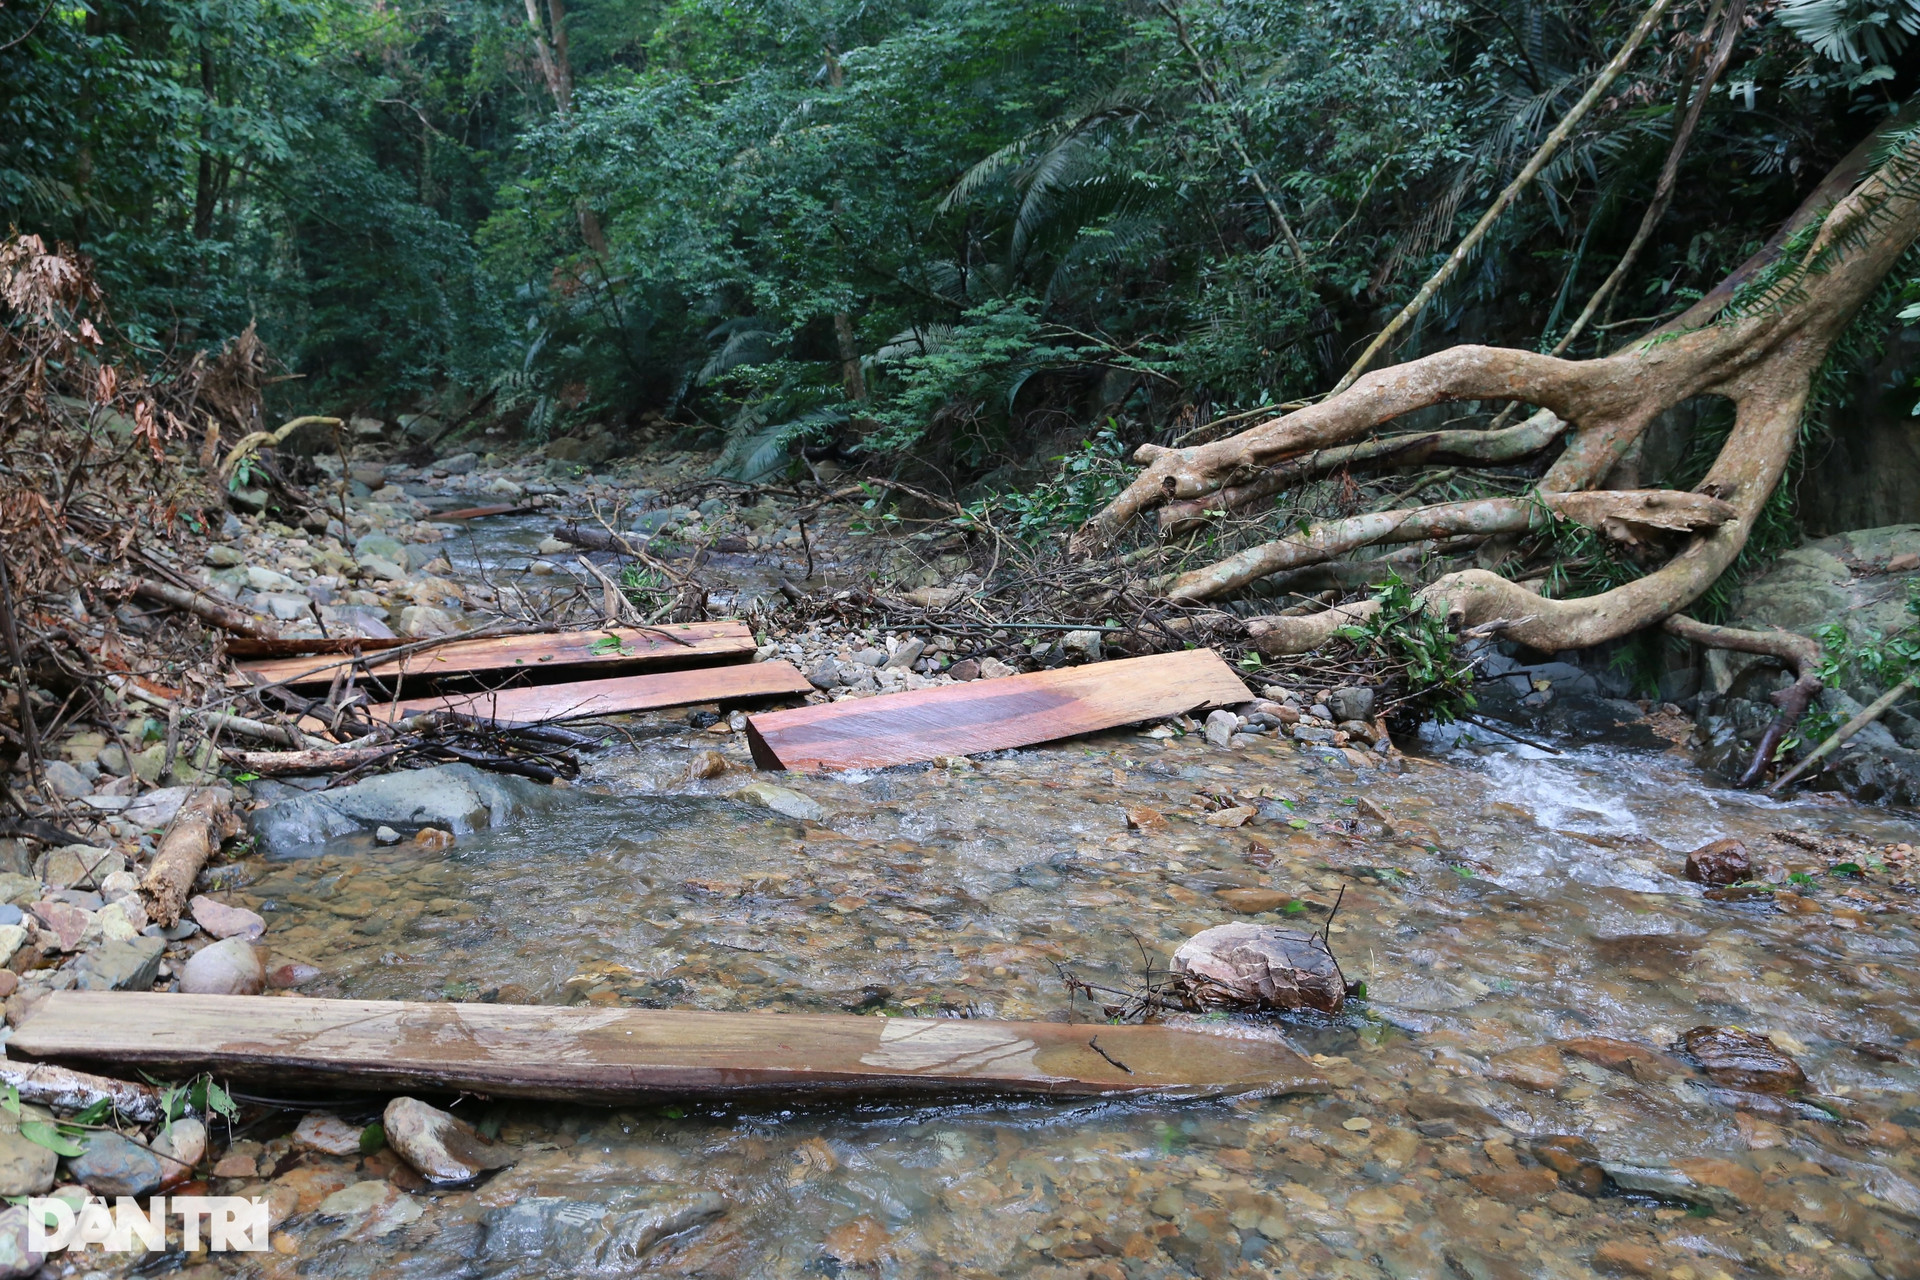 Điều tra, xử lý các đối tượng liên quan vụ chặt phá rừng đặc dụng - 3